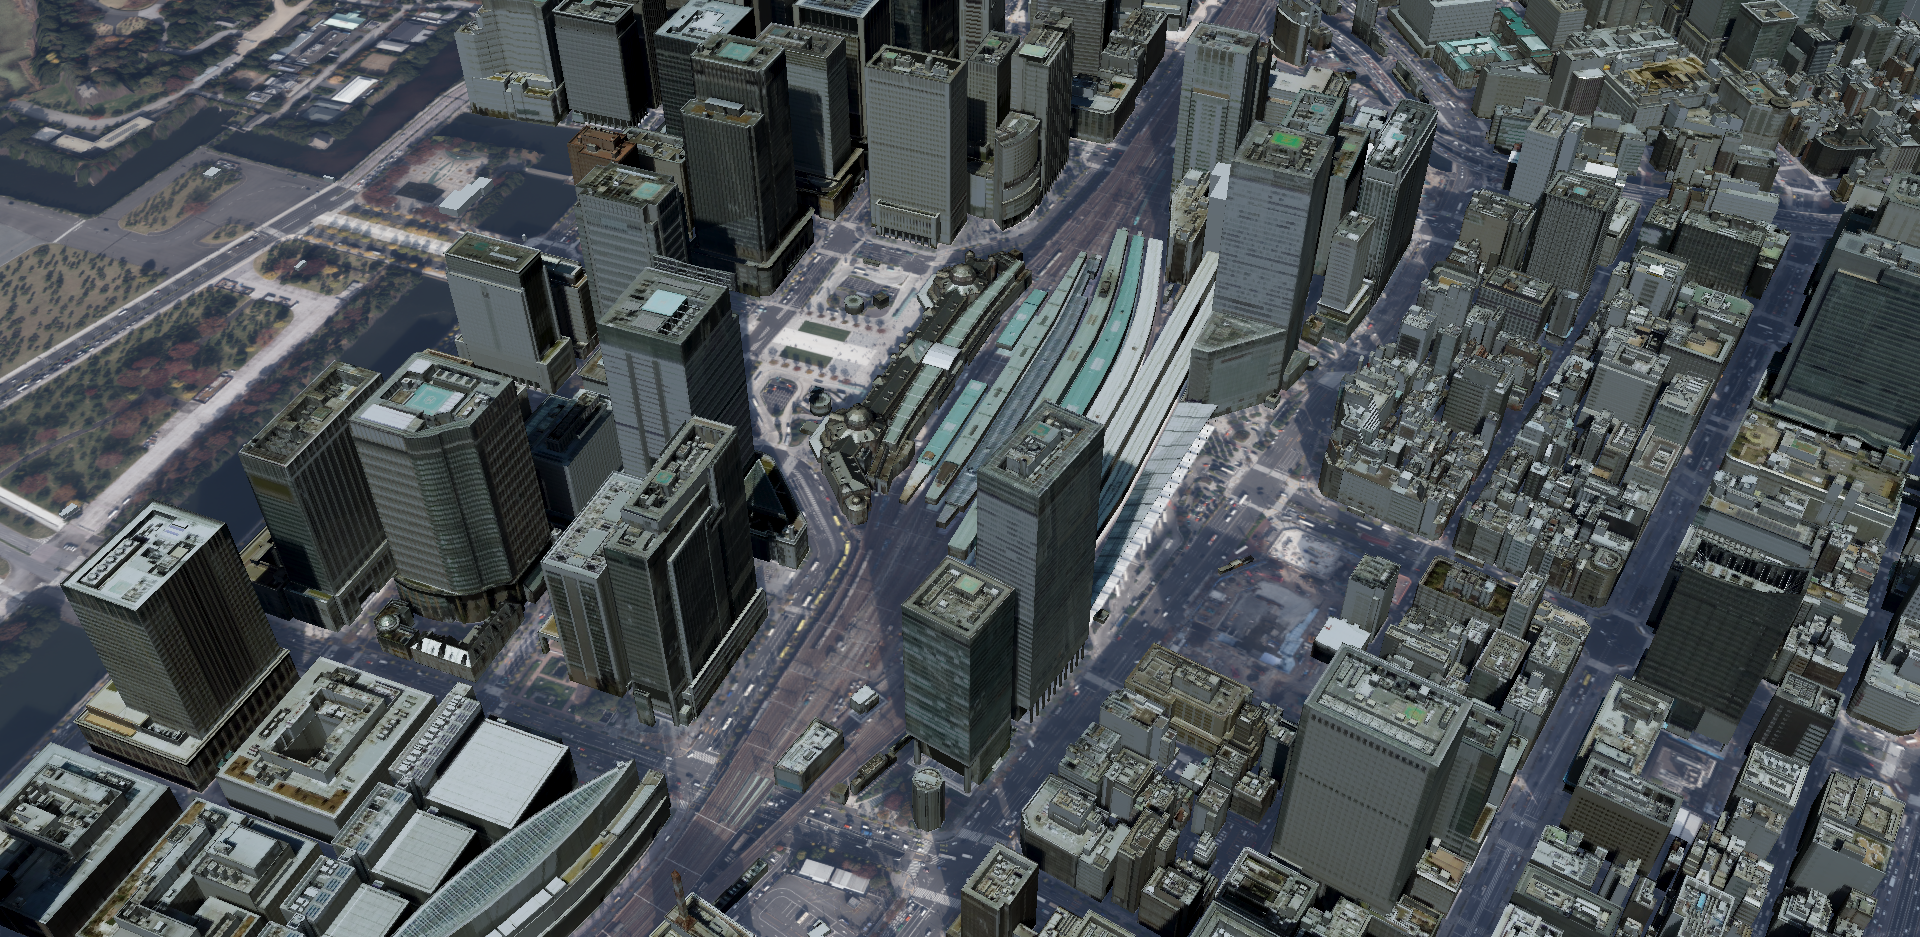 3D都市モデル「Project PLATEAU」と「Procedural PLATEAU」のご紹介 ...